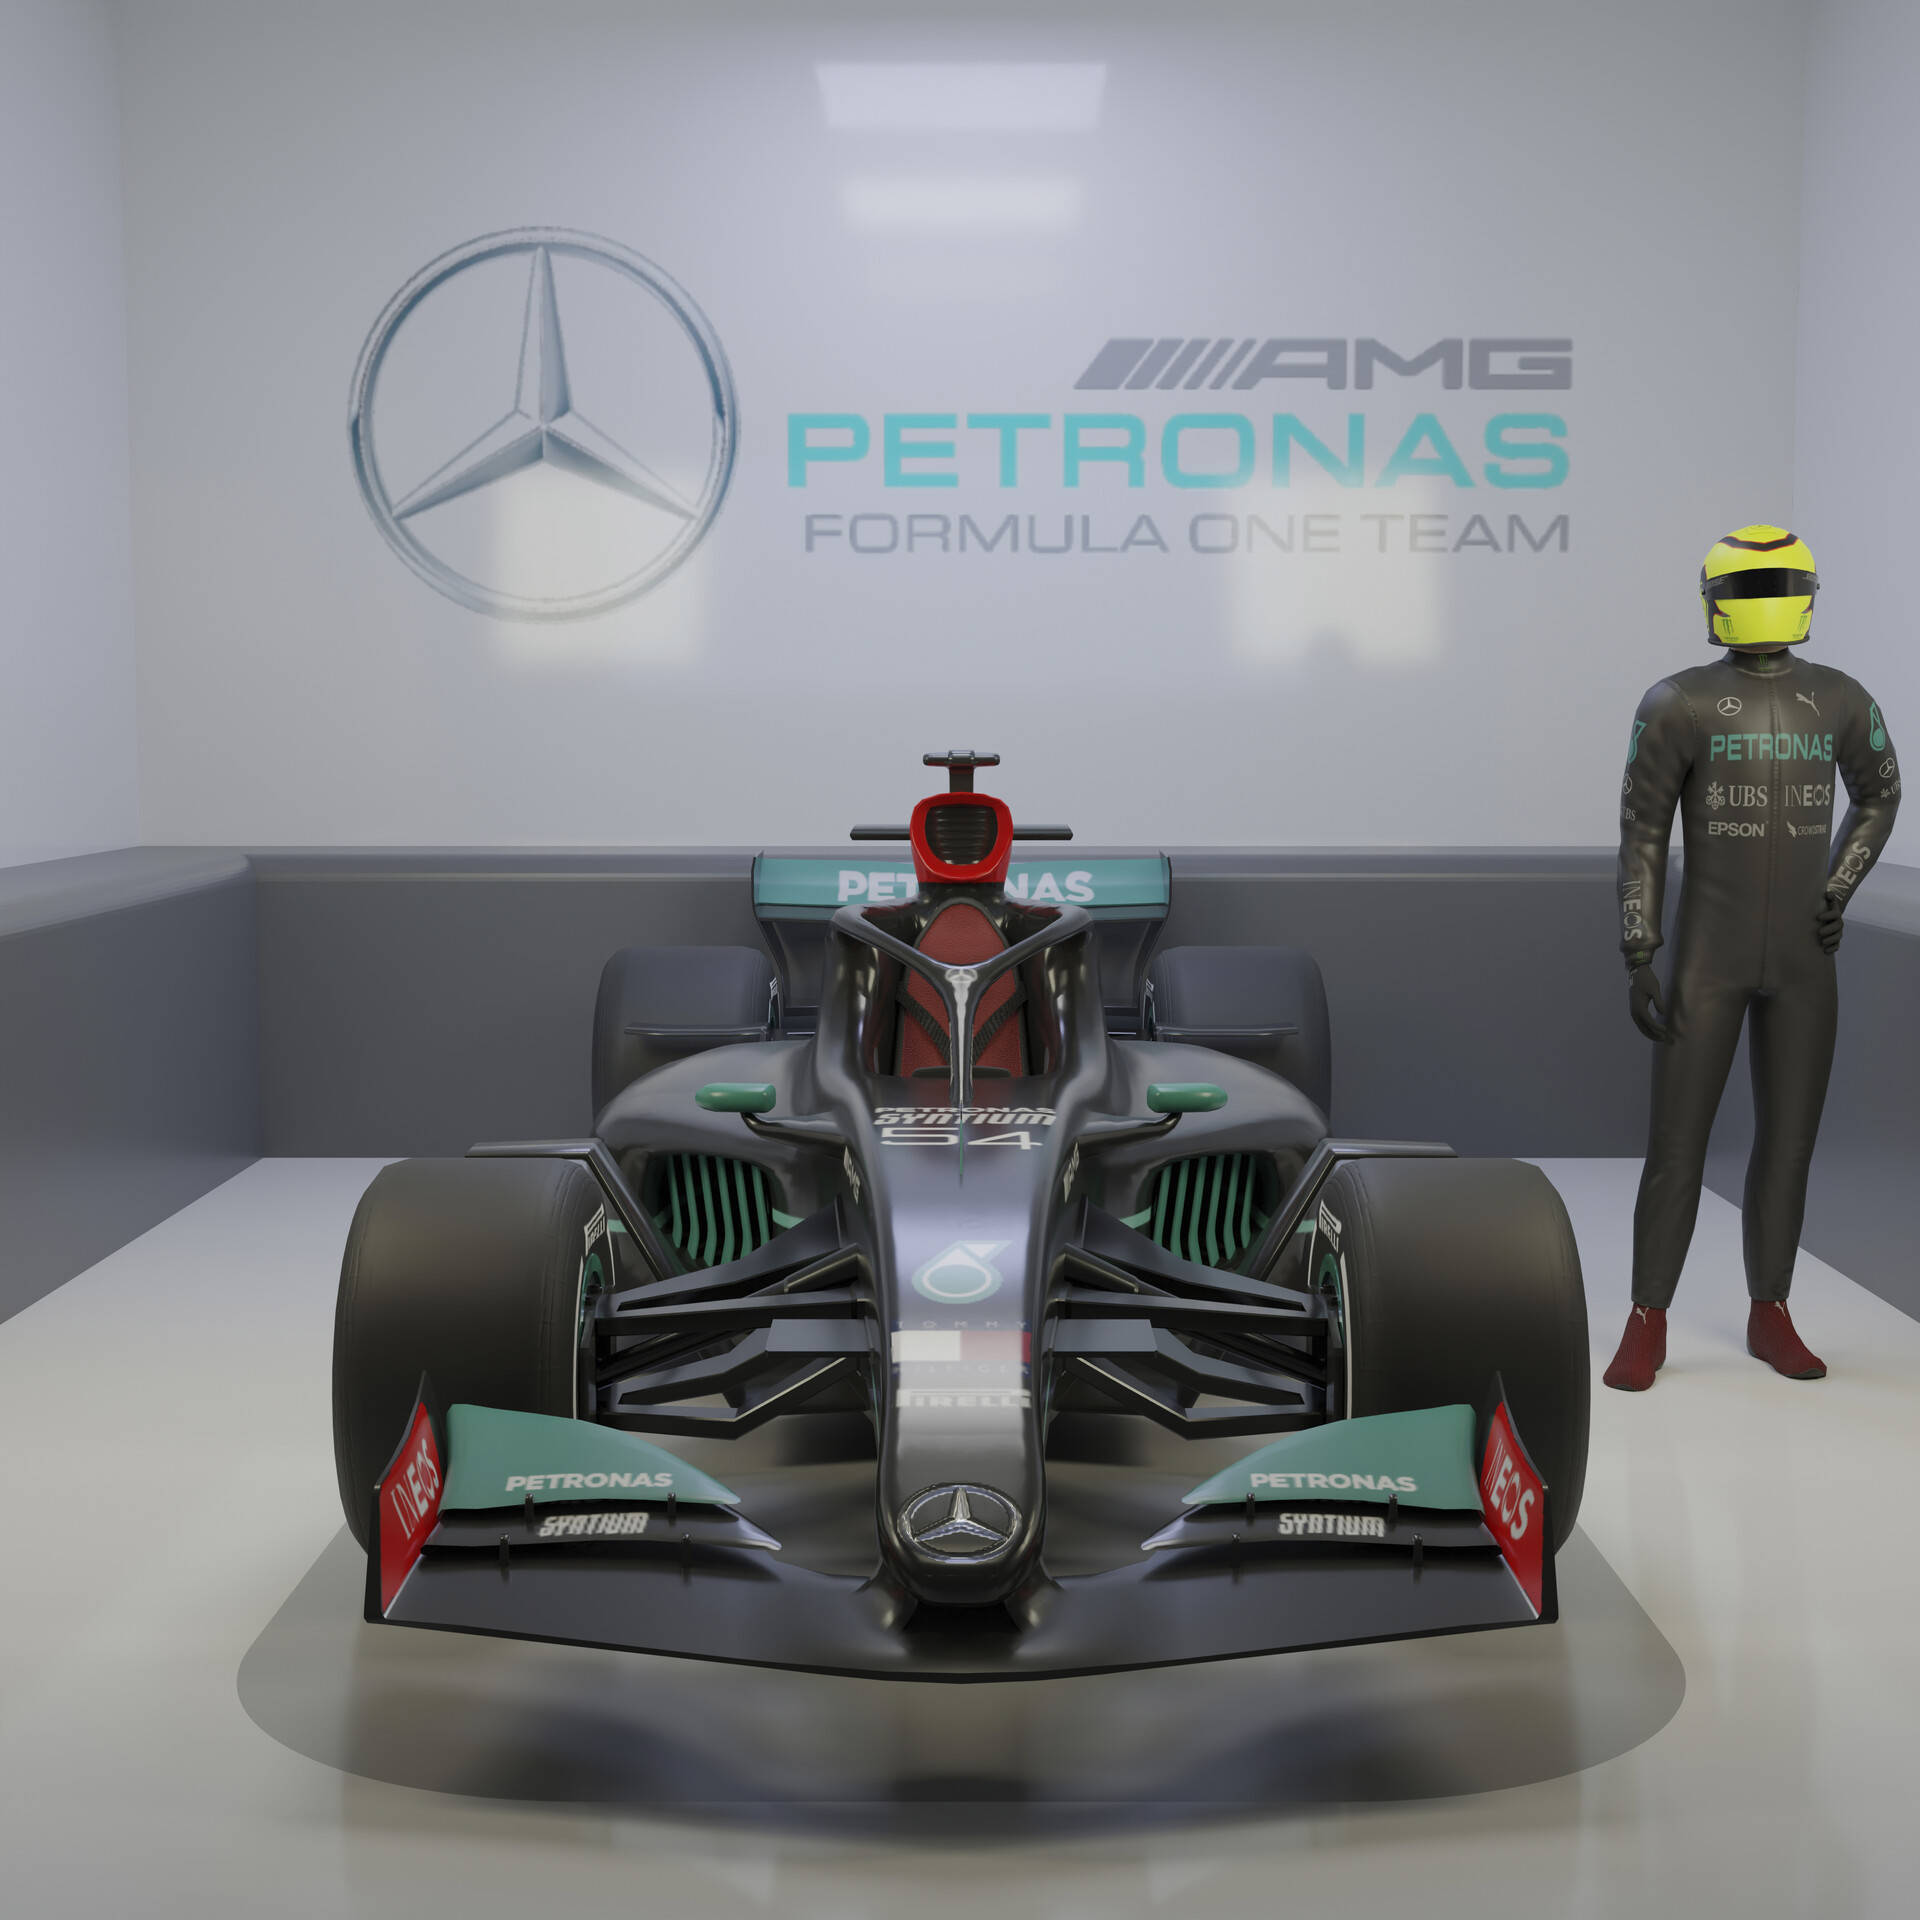 Formå Mercedes F1 Racing Fans Jubel da De Følger Hvert Lap på deres Iphone Wallpaper